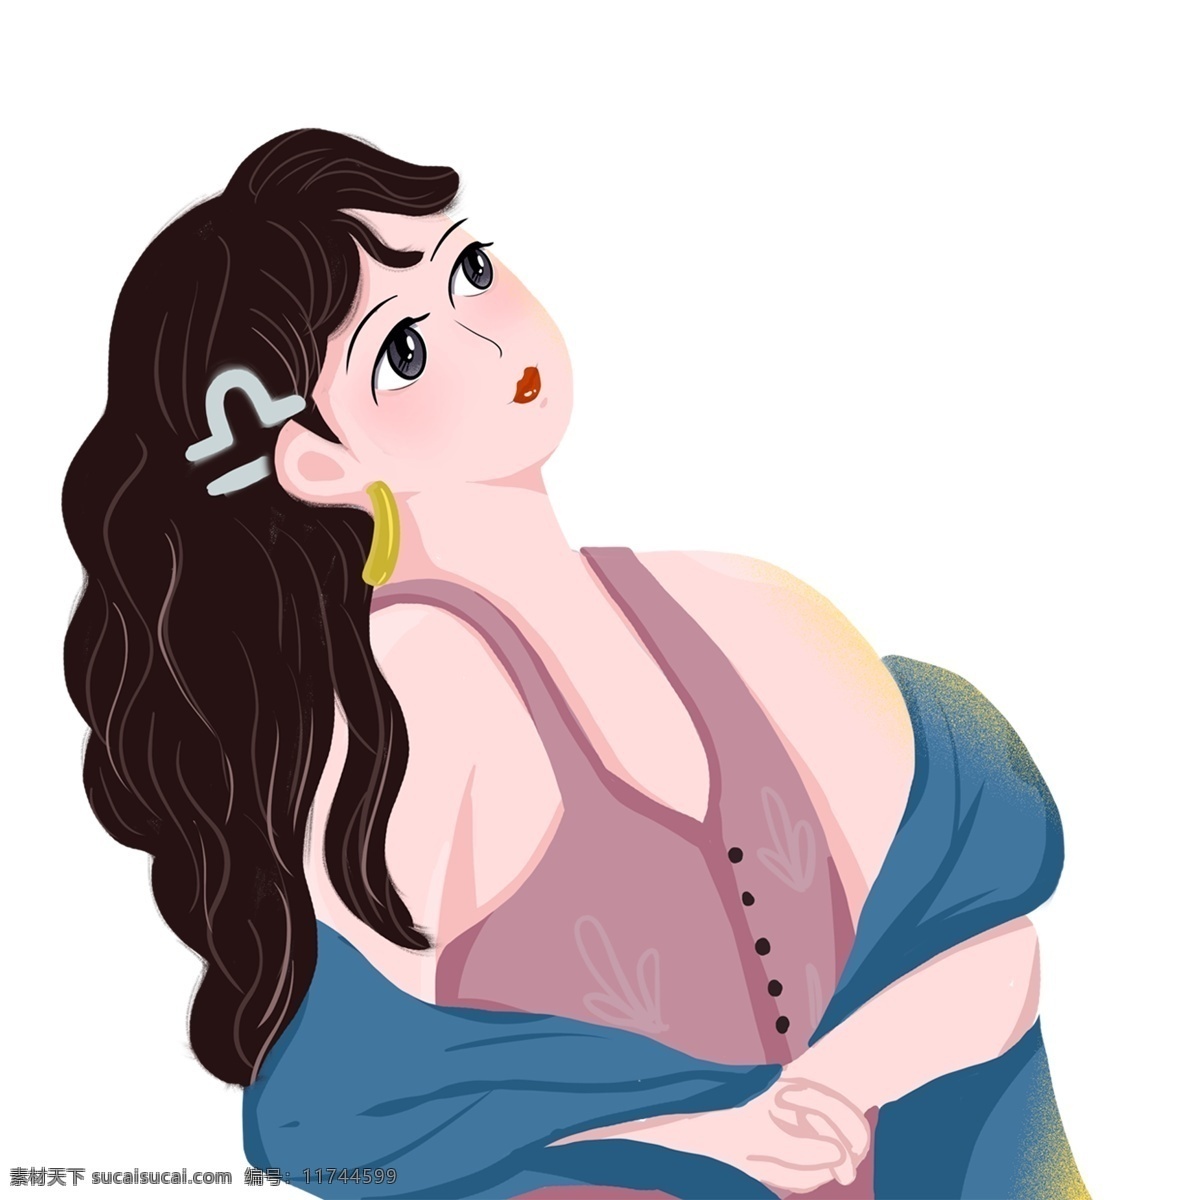 手绘 微 胖 天 枰 座 女孩 商用 元素 人物 微胖女孩 插画人物 天秤座女孩 天秤座符号